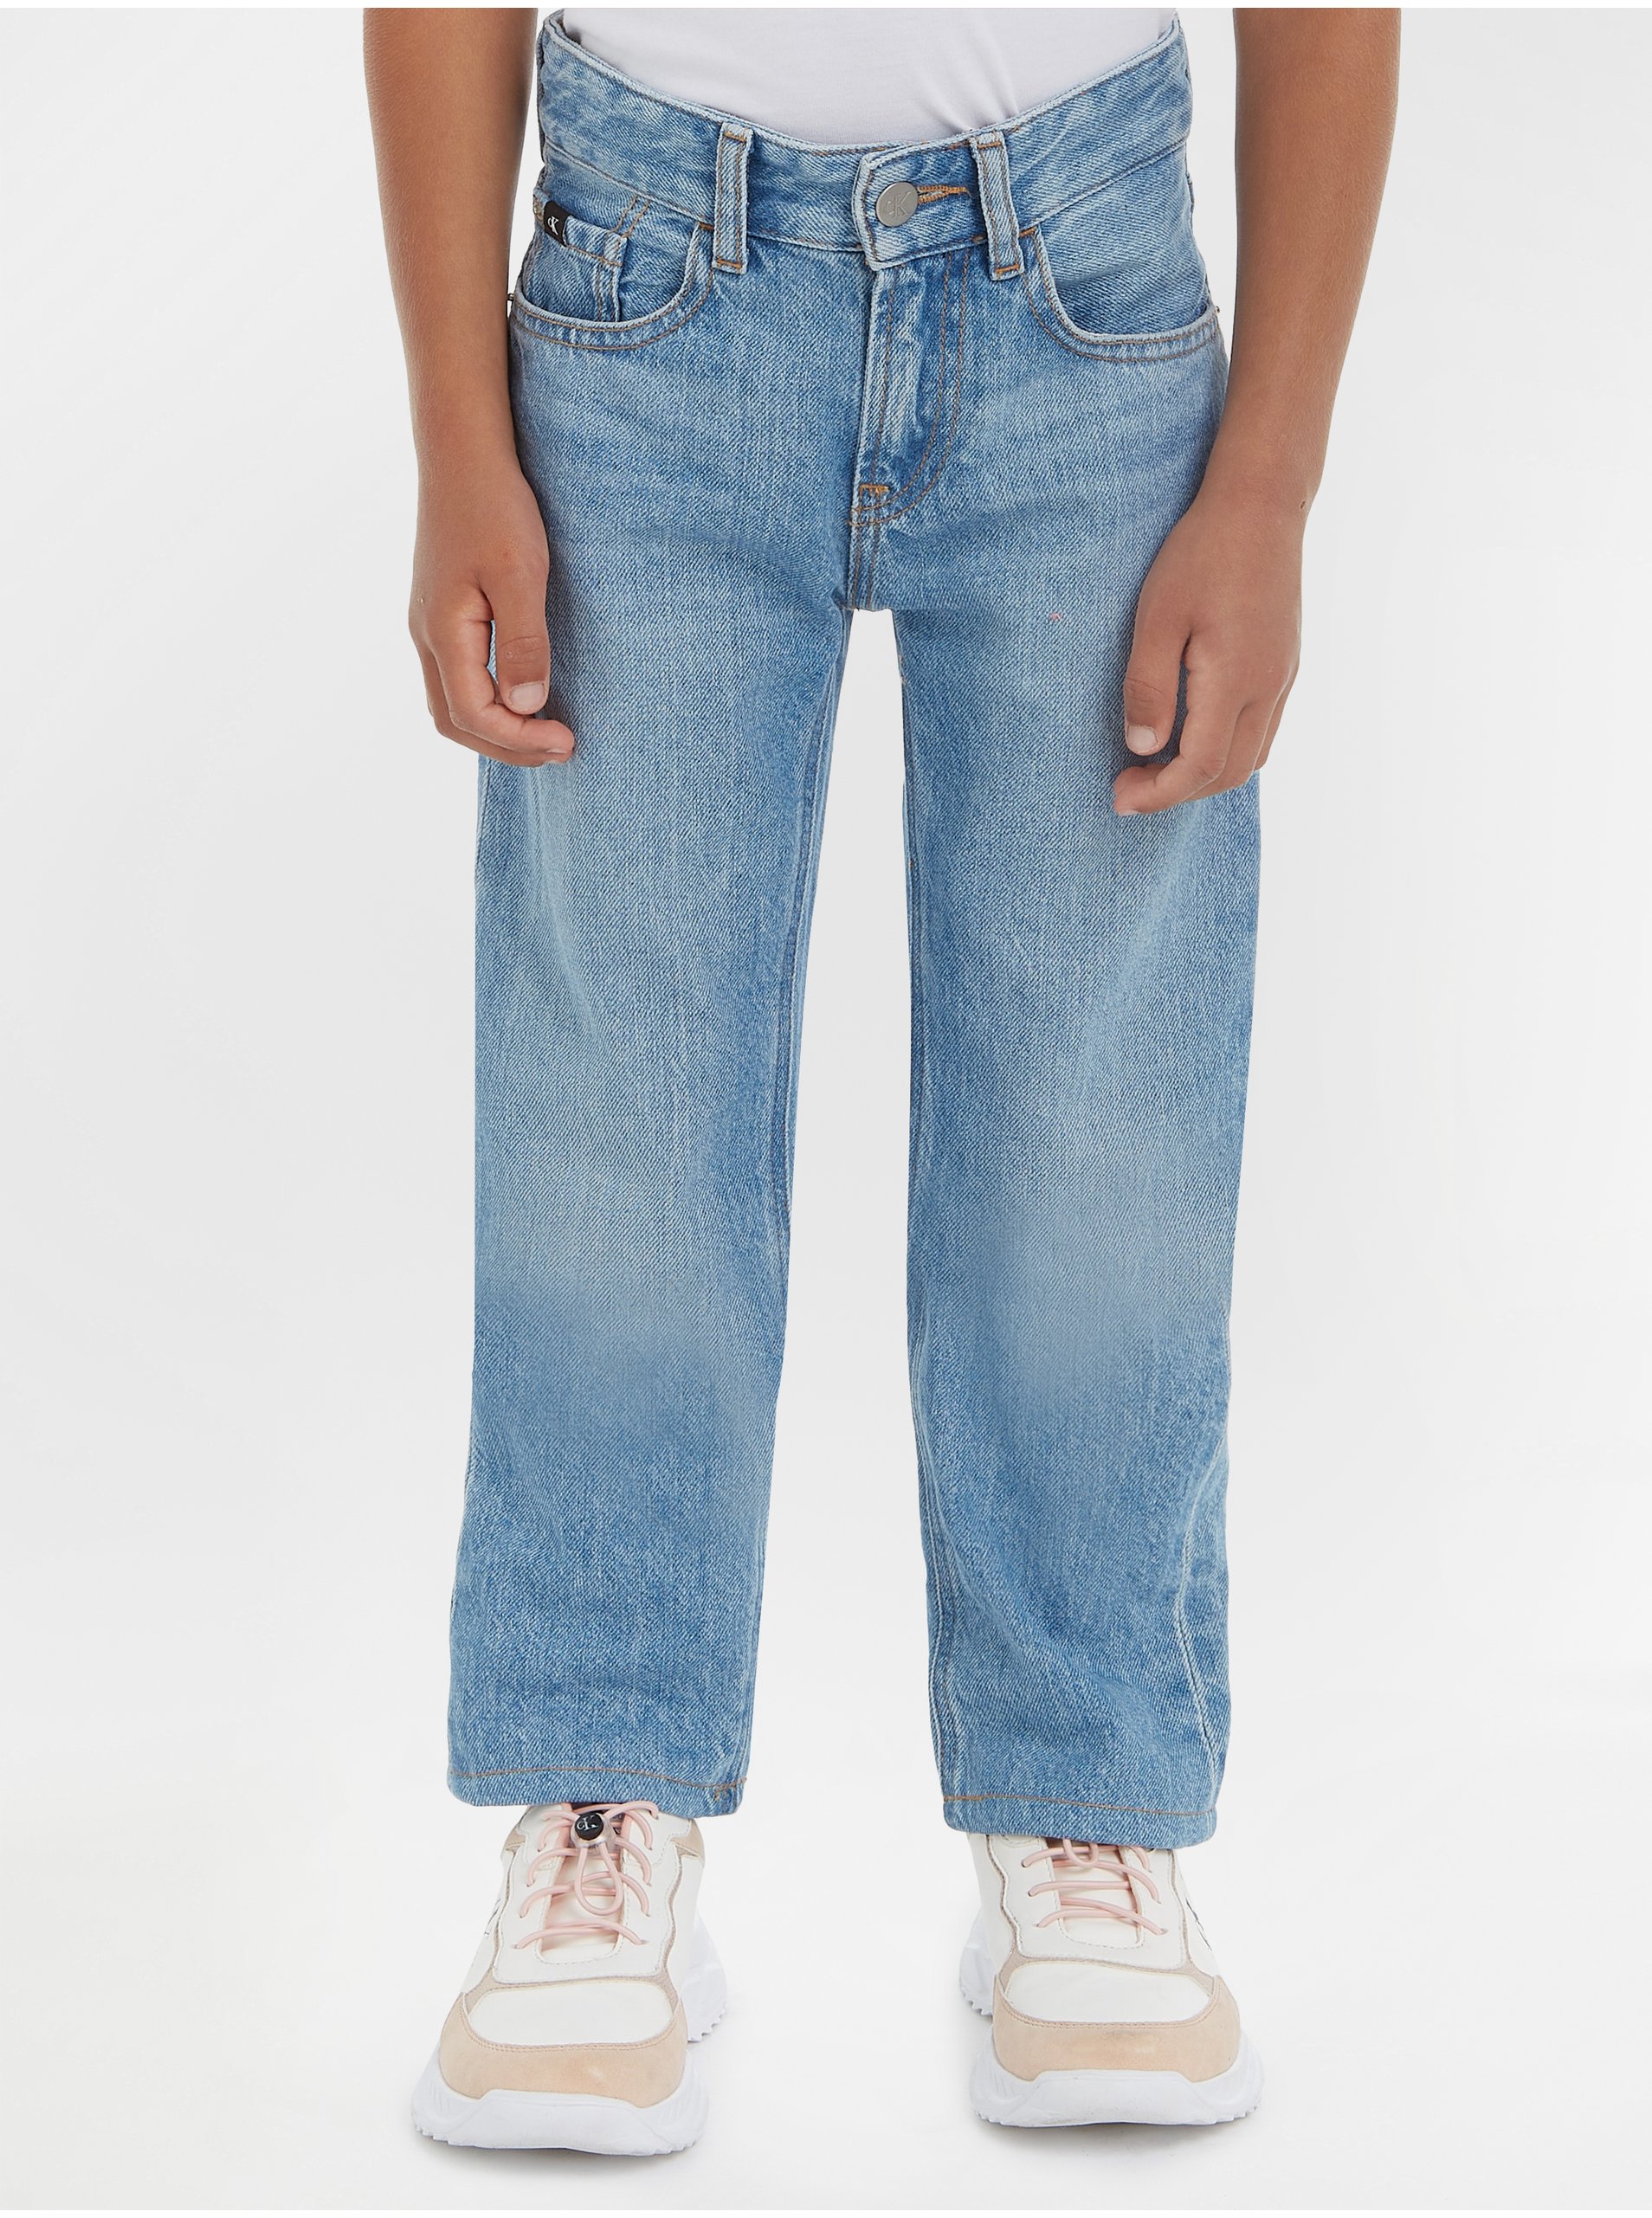 Lacno Svetlomodré chlapčenské straight fit džínsy Calvin Klein